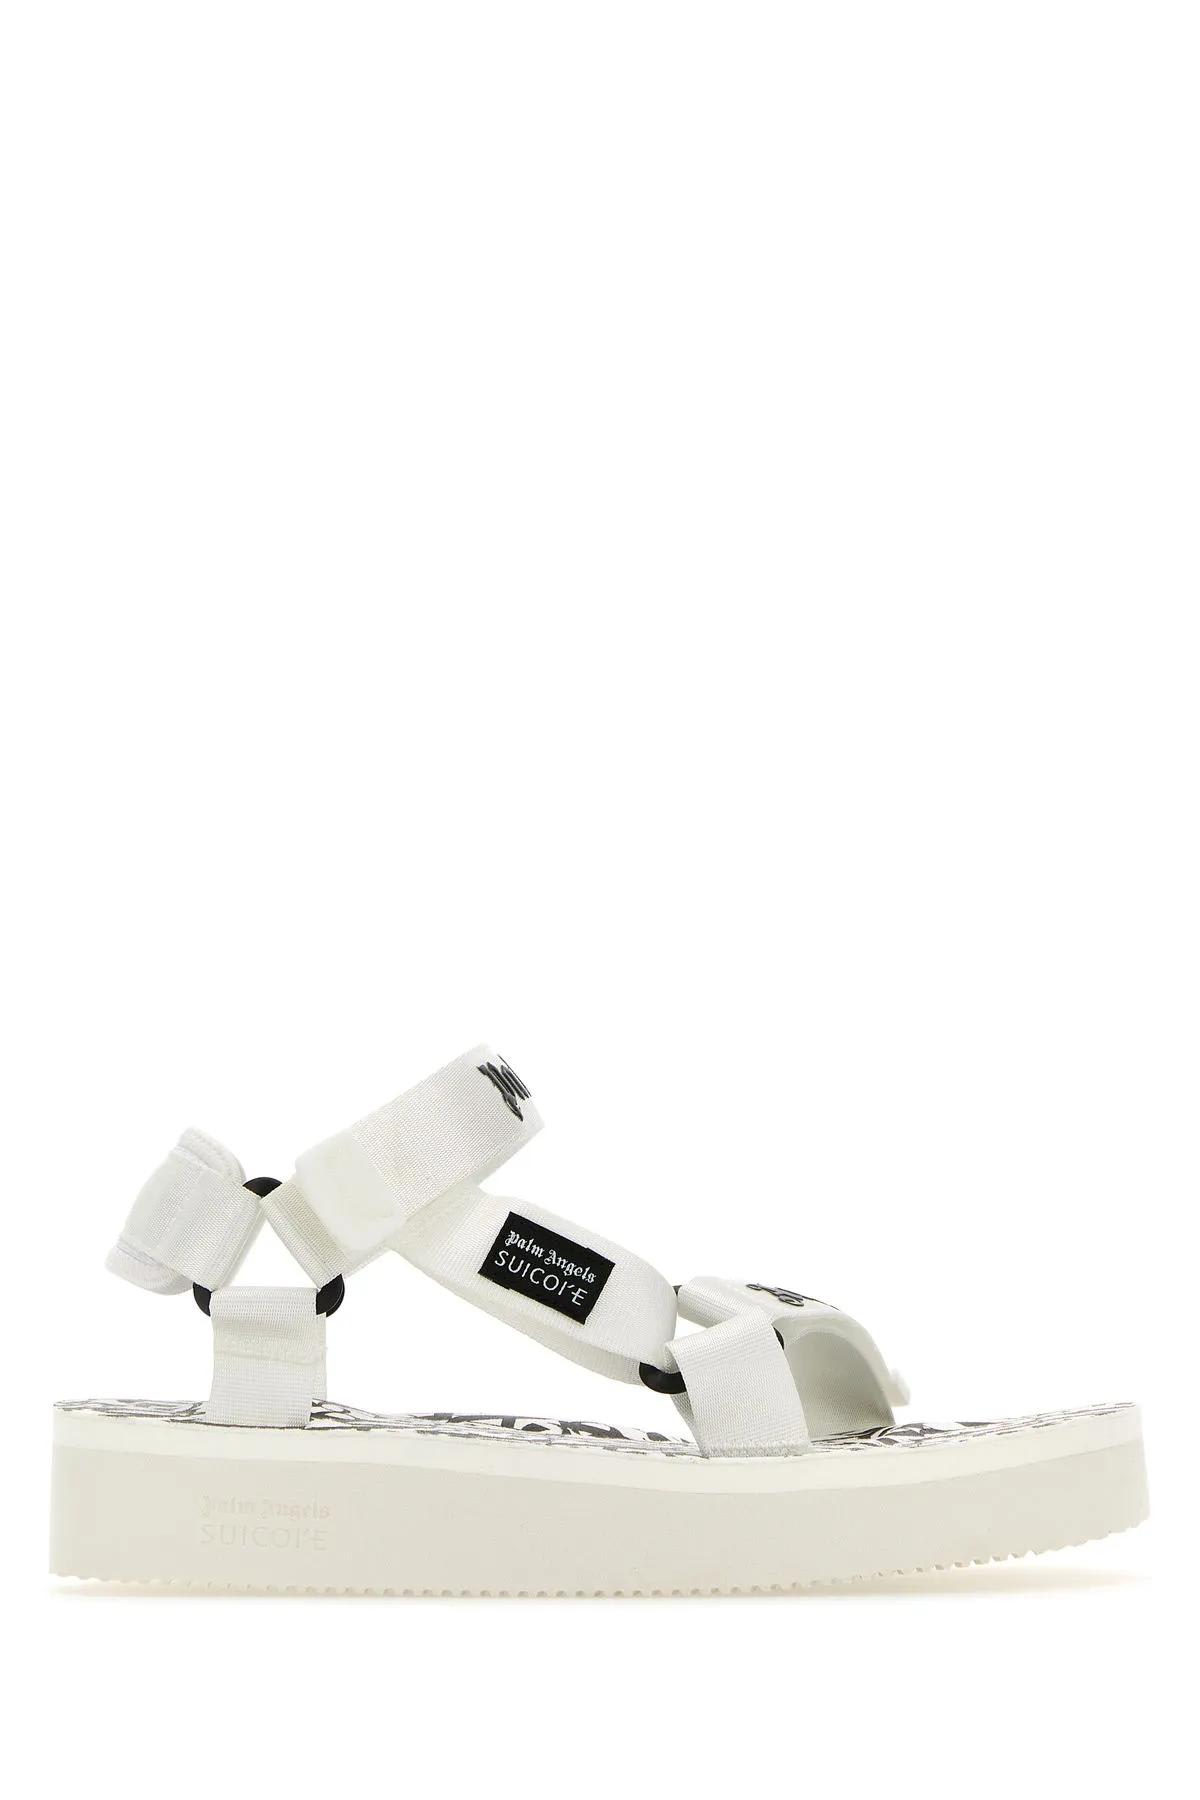 Shop Palm Angels White Fabric X Suicoke Sandals